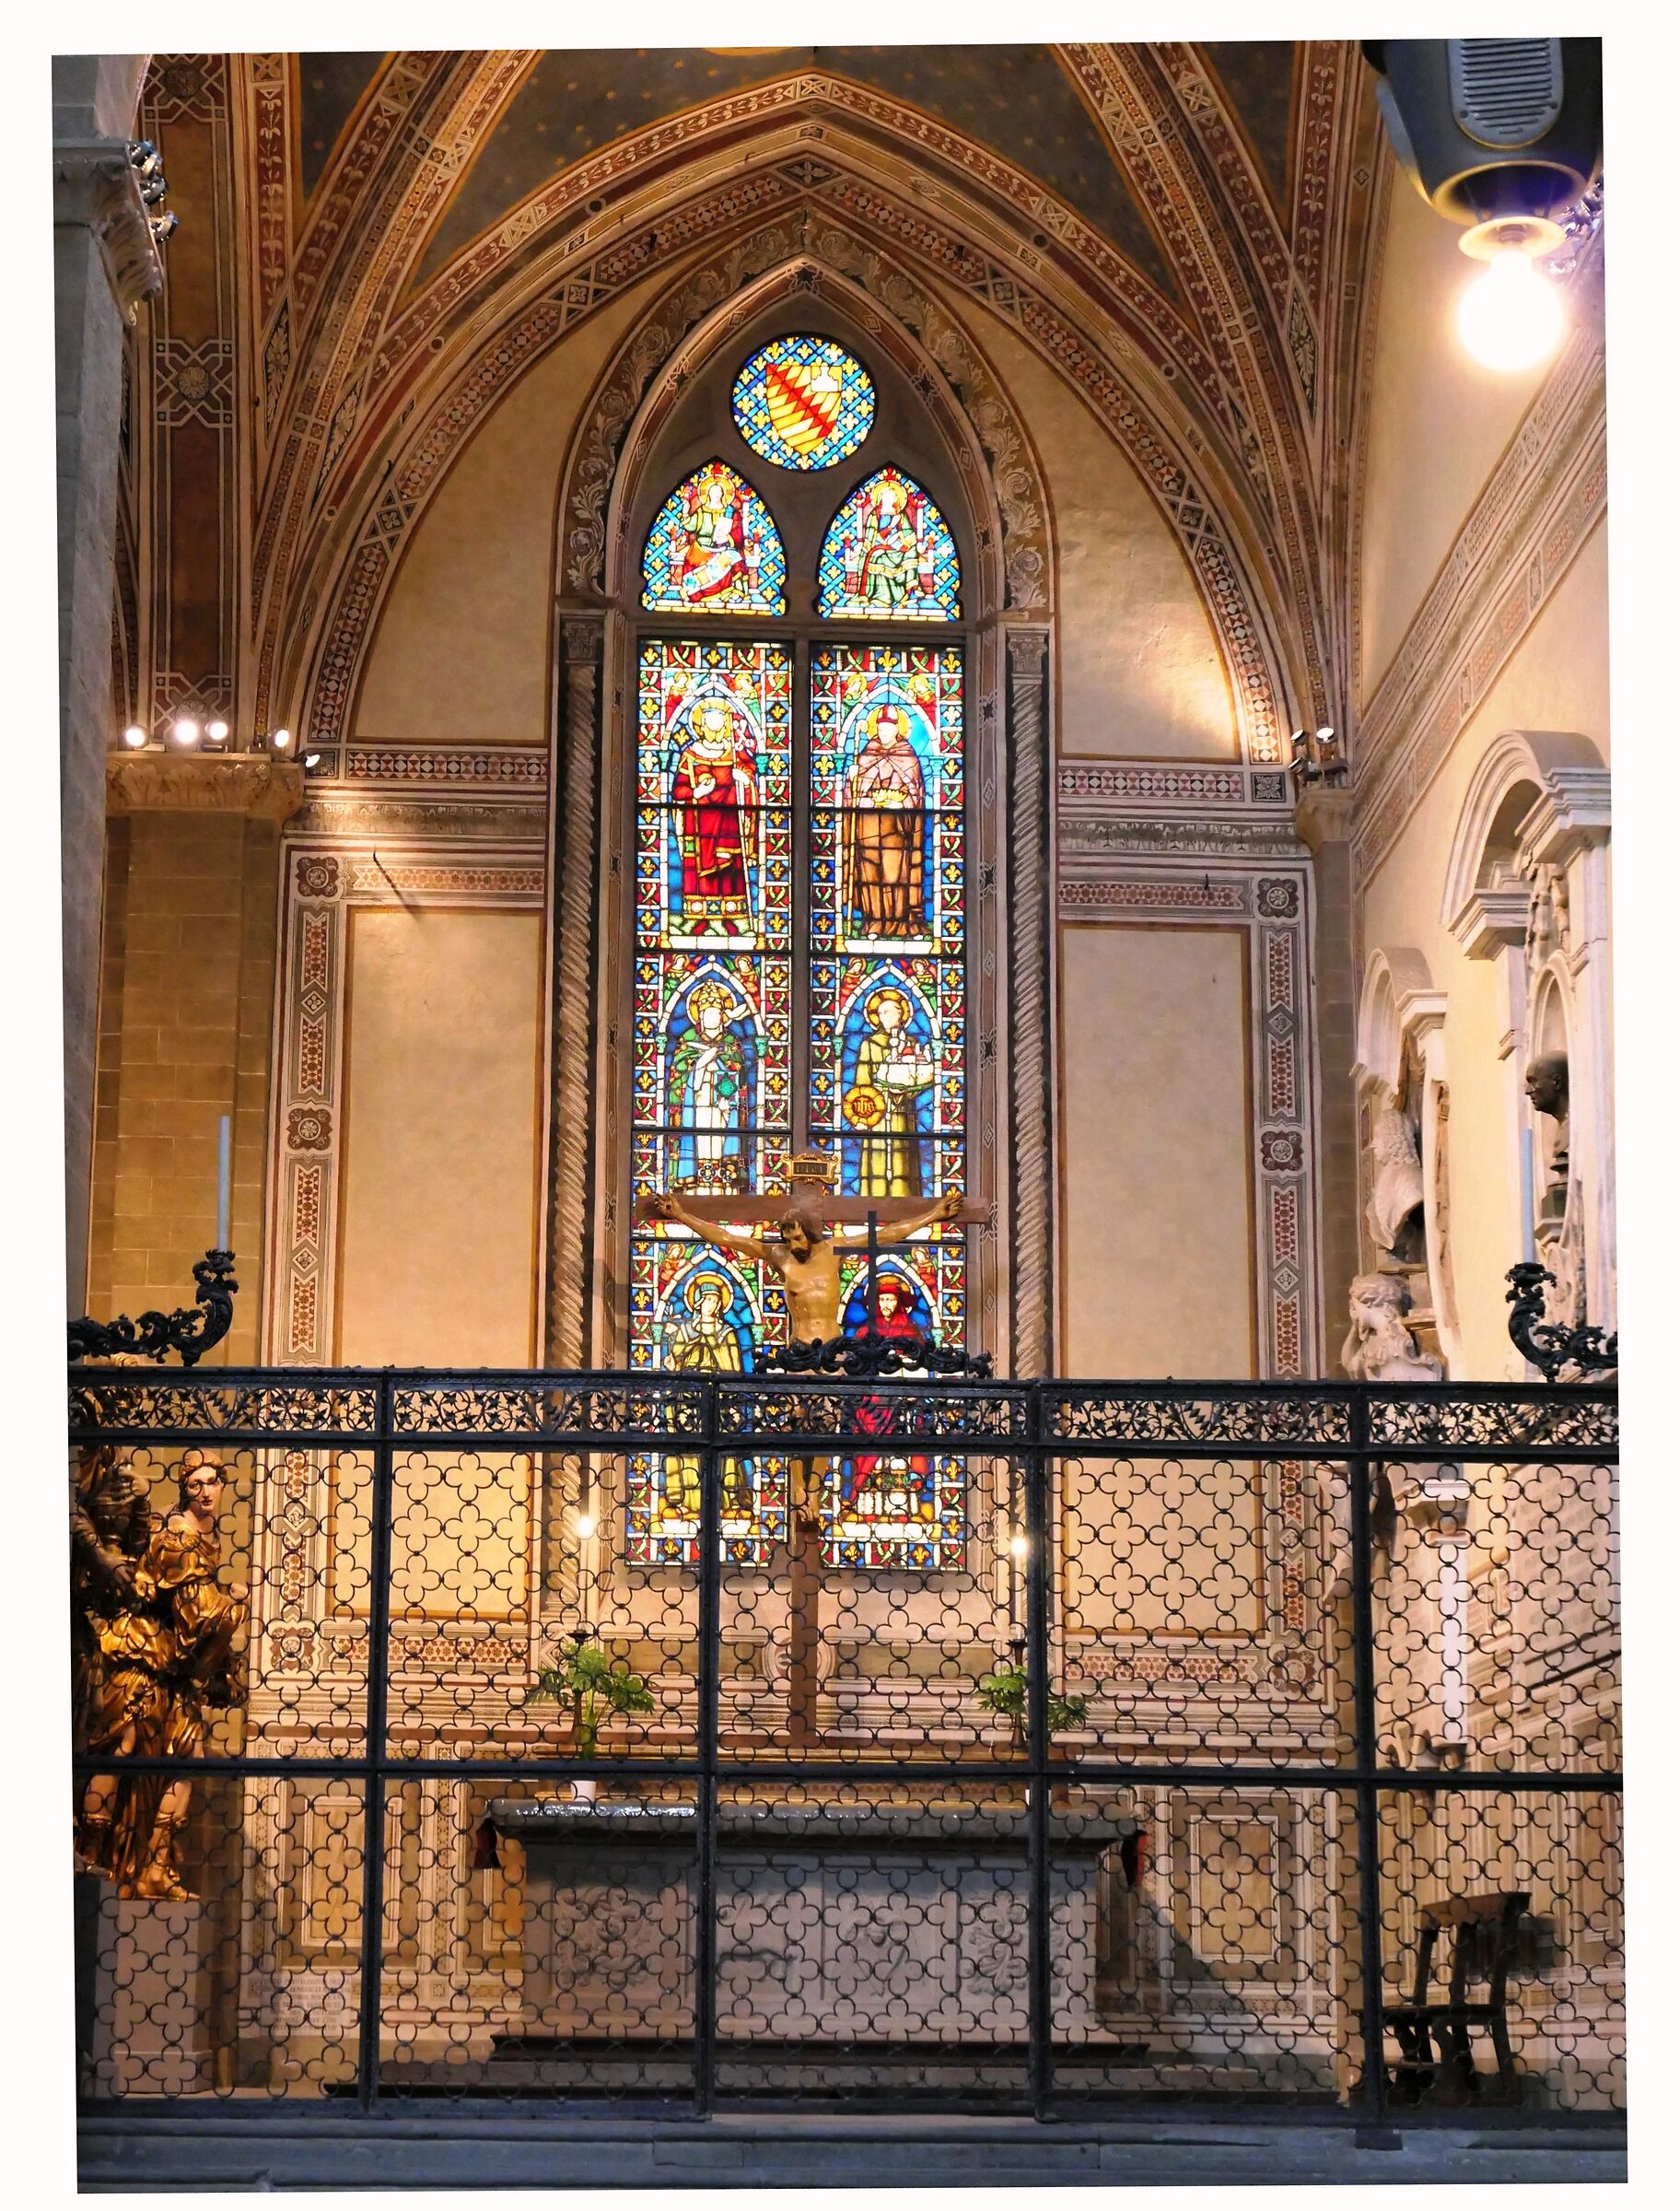 Basilica di Santa Croce - Donatello "Crocifisso"...